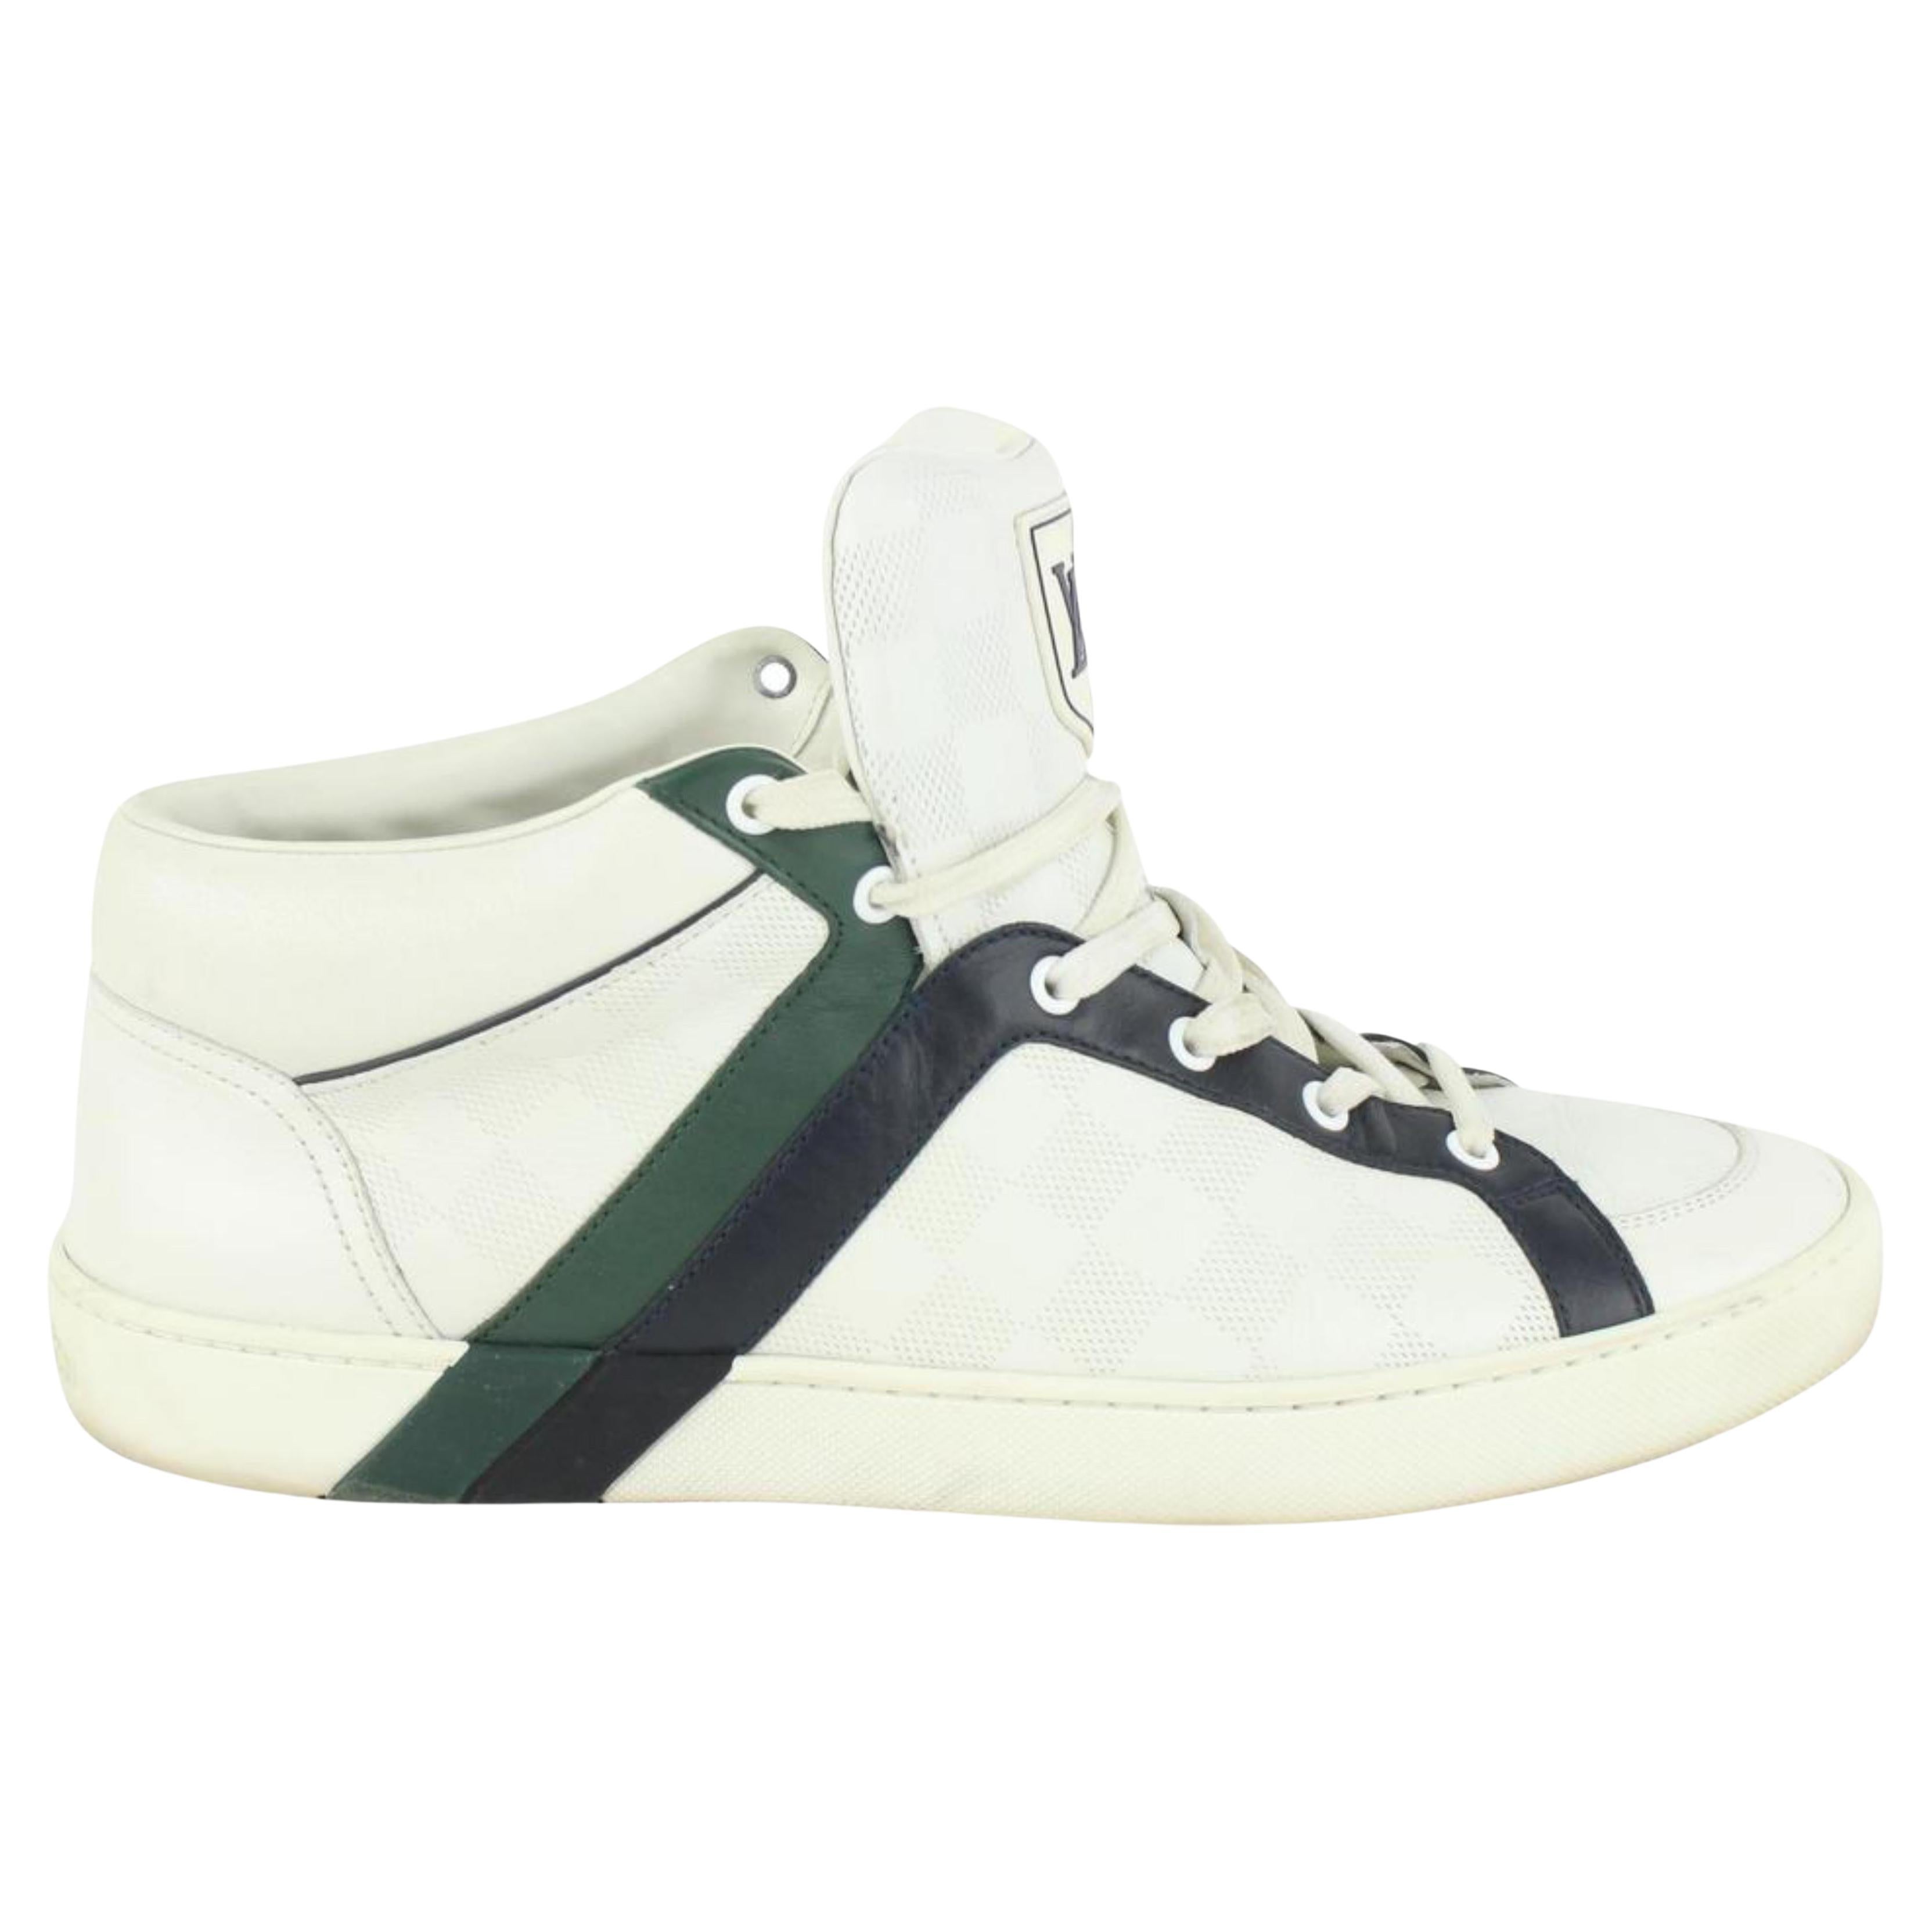 Baskets Louis Vuitton en cuir Damier Infini blanc vert et blanc pour homme 1117lv8, taille 8,5 US en vente